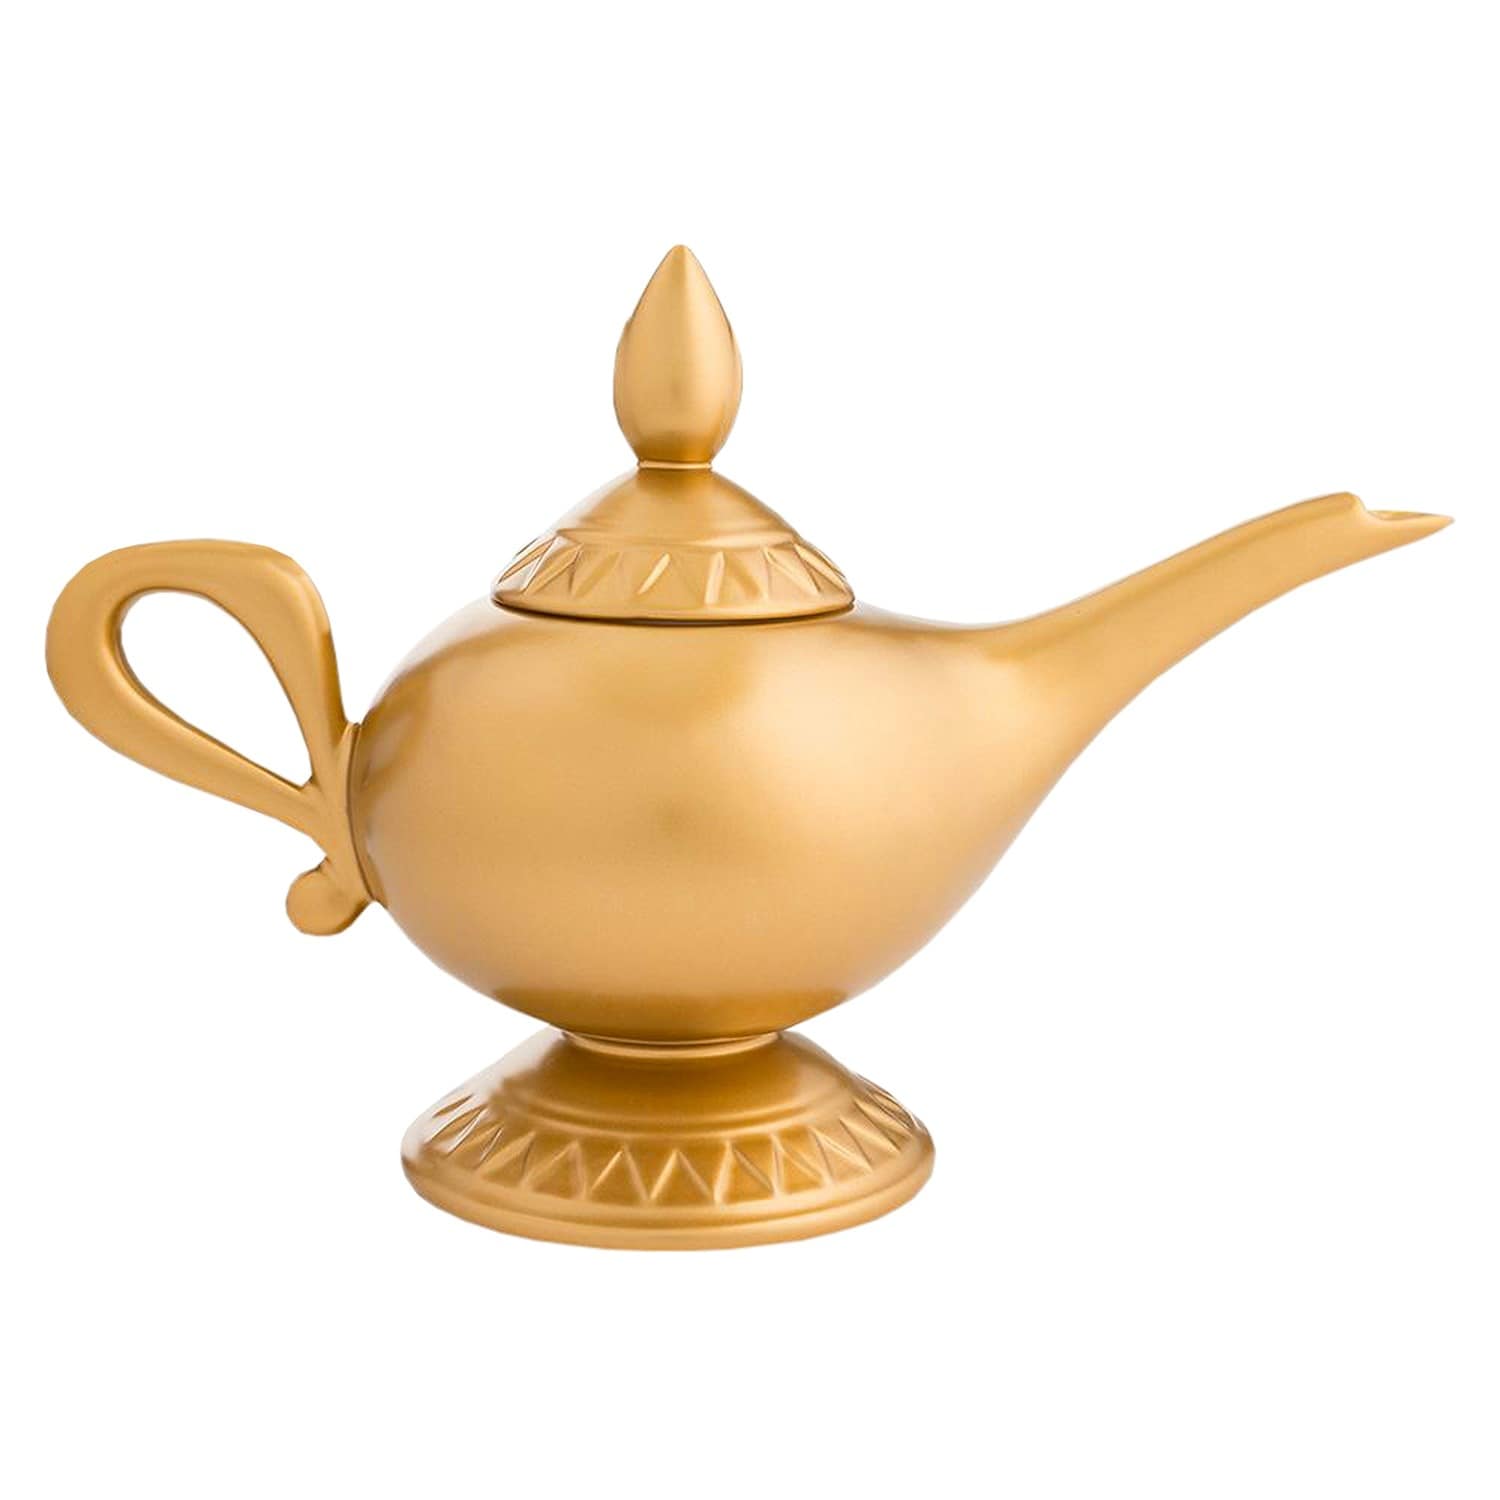 ceramic tea kettle history